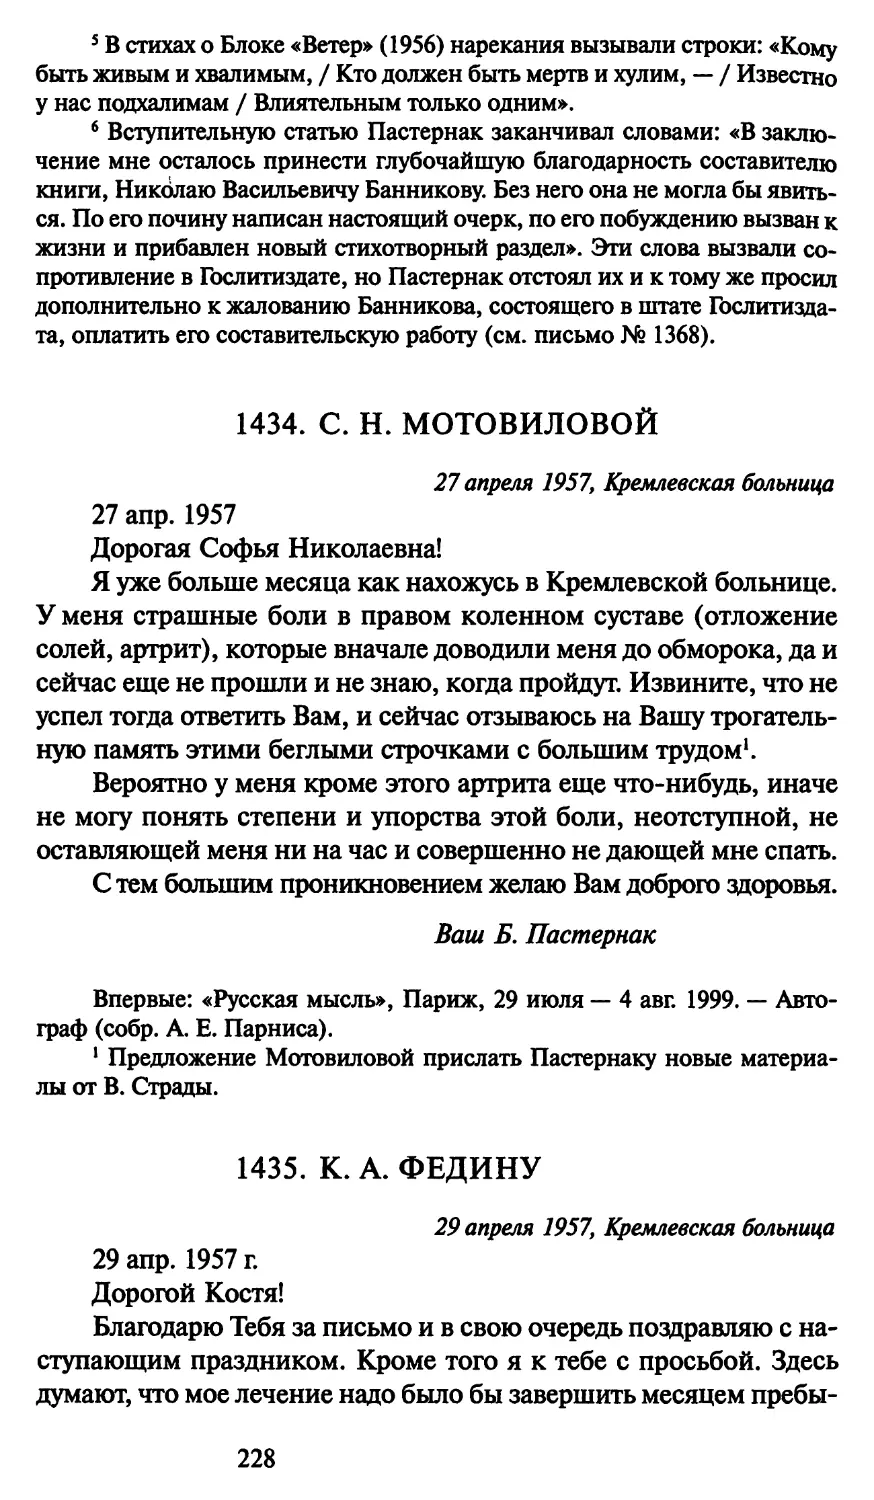 1434. С. Н. Мотовиловой 27 апреля 1957
1435. К. А. Федину 29 апреля 1957